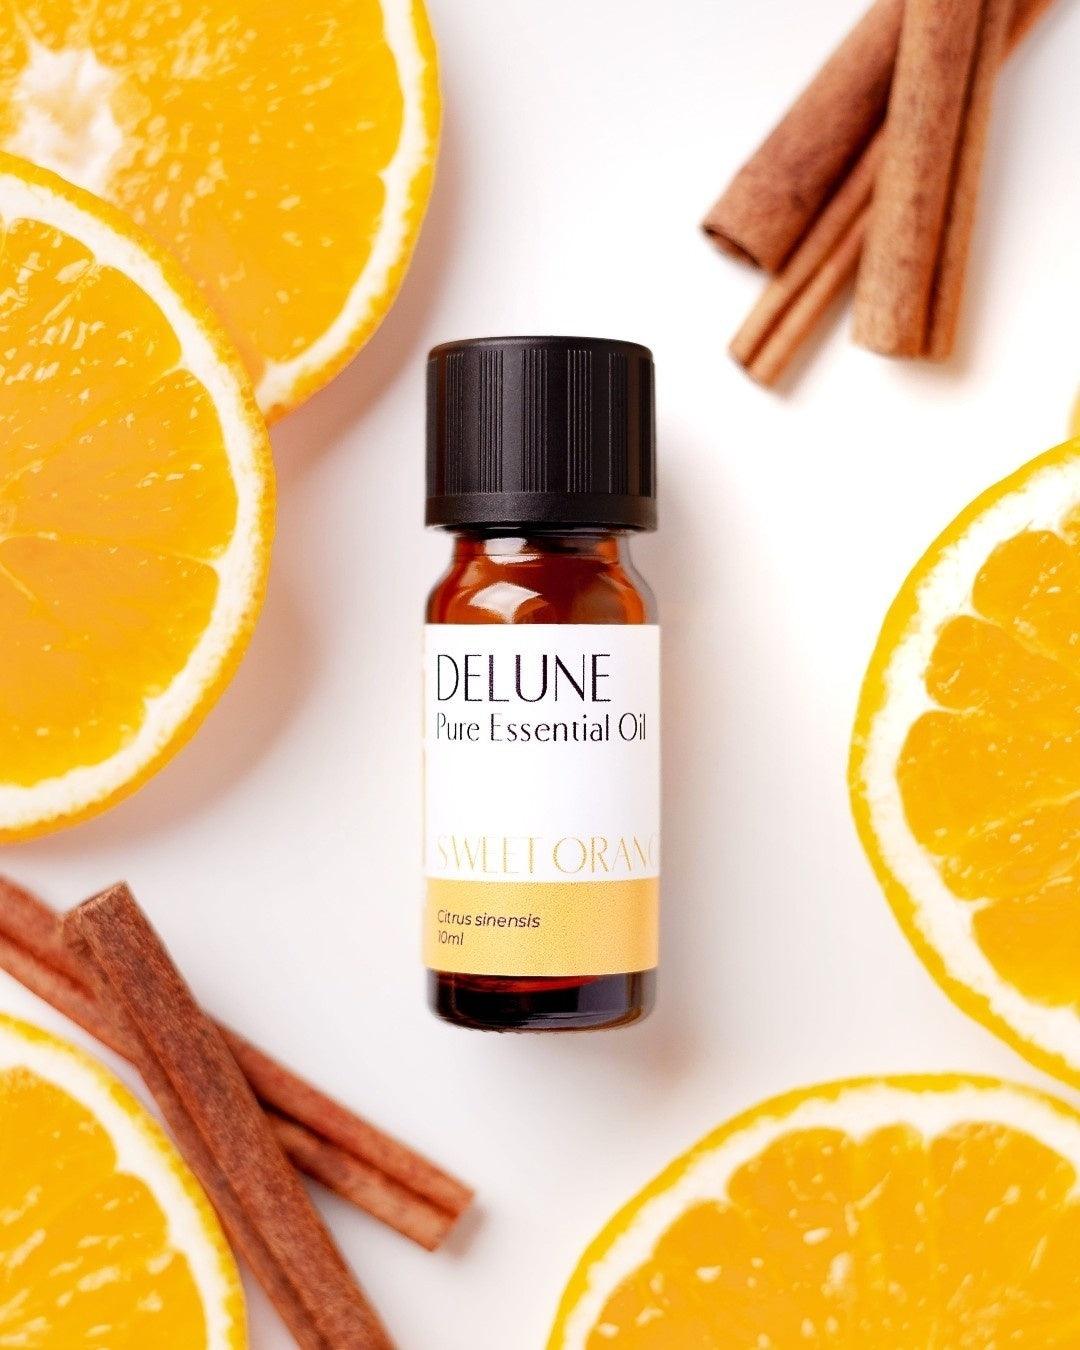 Sweet Orange Pure Essential Oil - Delune Dubai